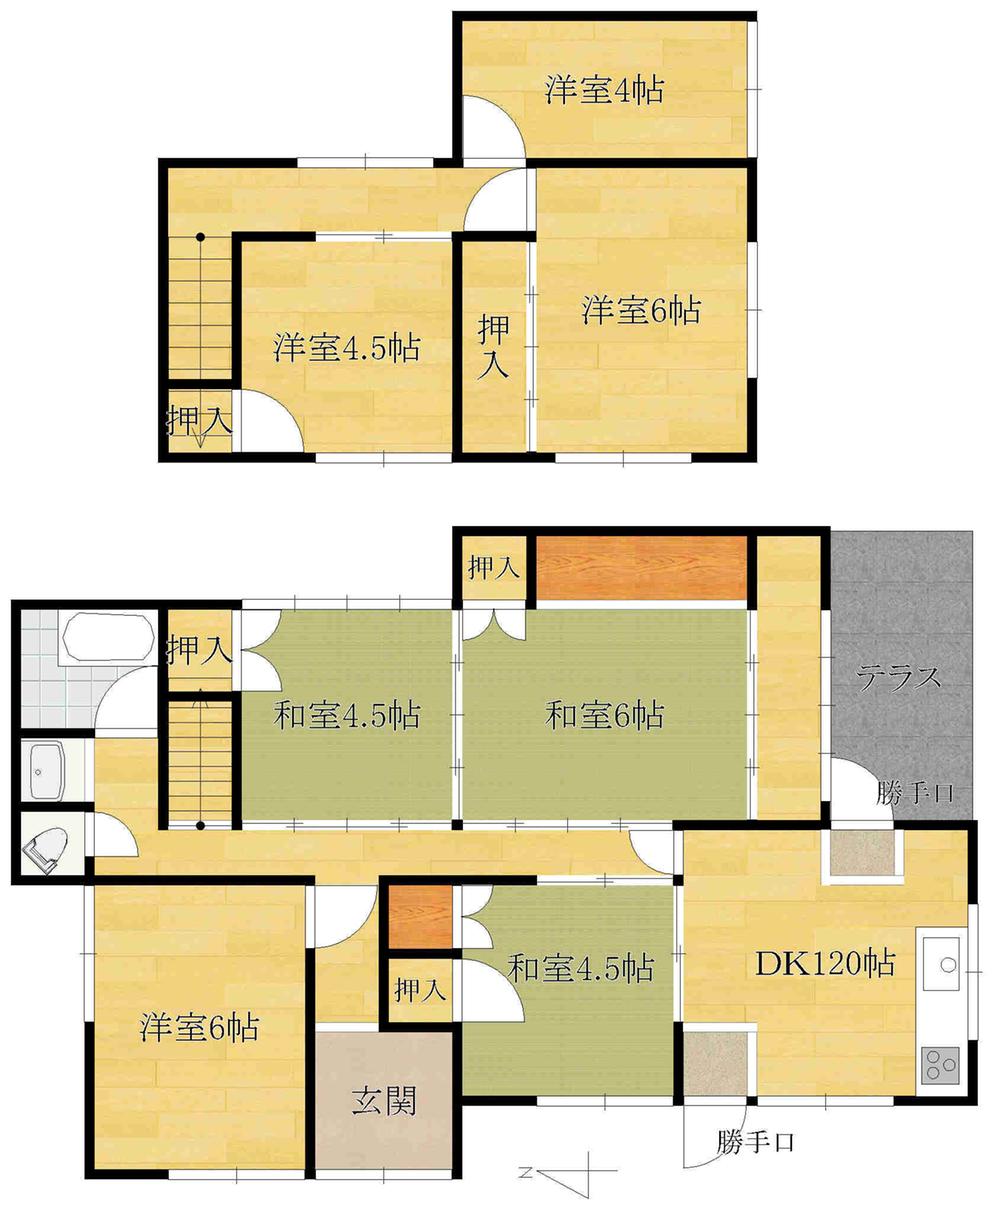 Floor plan. 3 million yen, 7DK, Land area 71.18 sq m , Building area 102.3 sq m